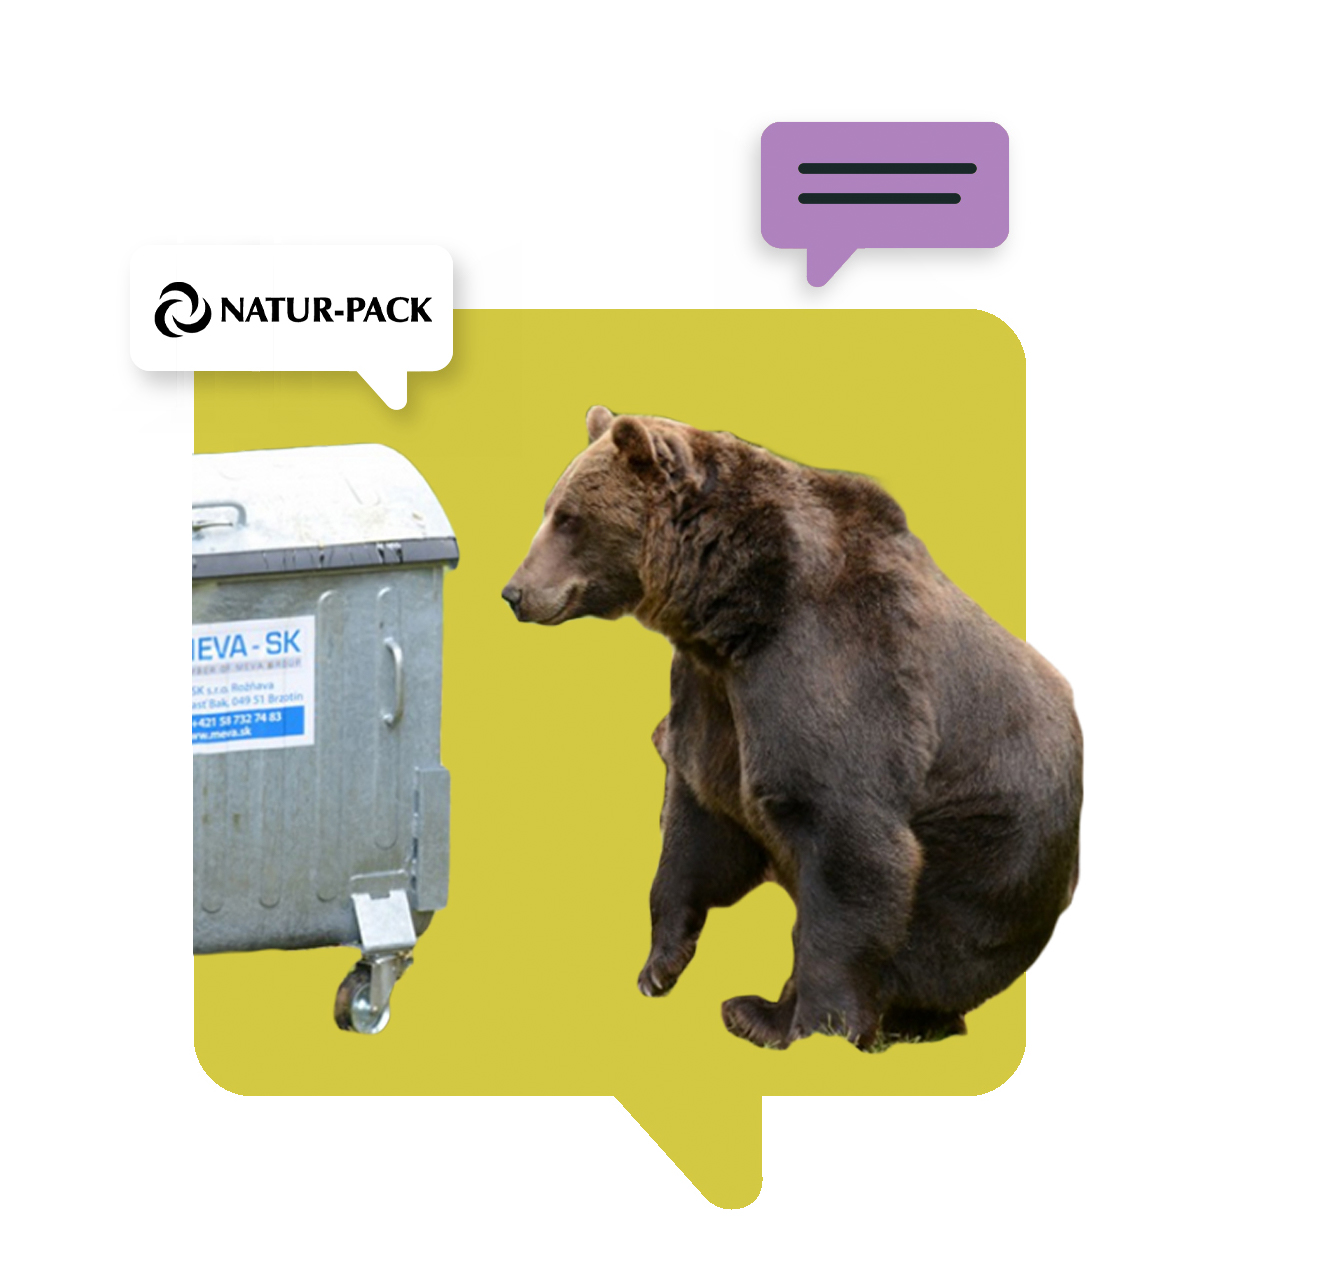 Stretnutie s medveďom a NATUR-PACK